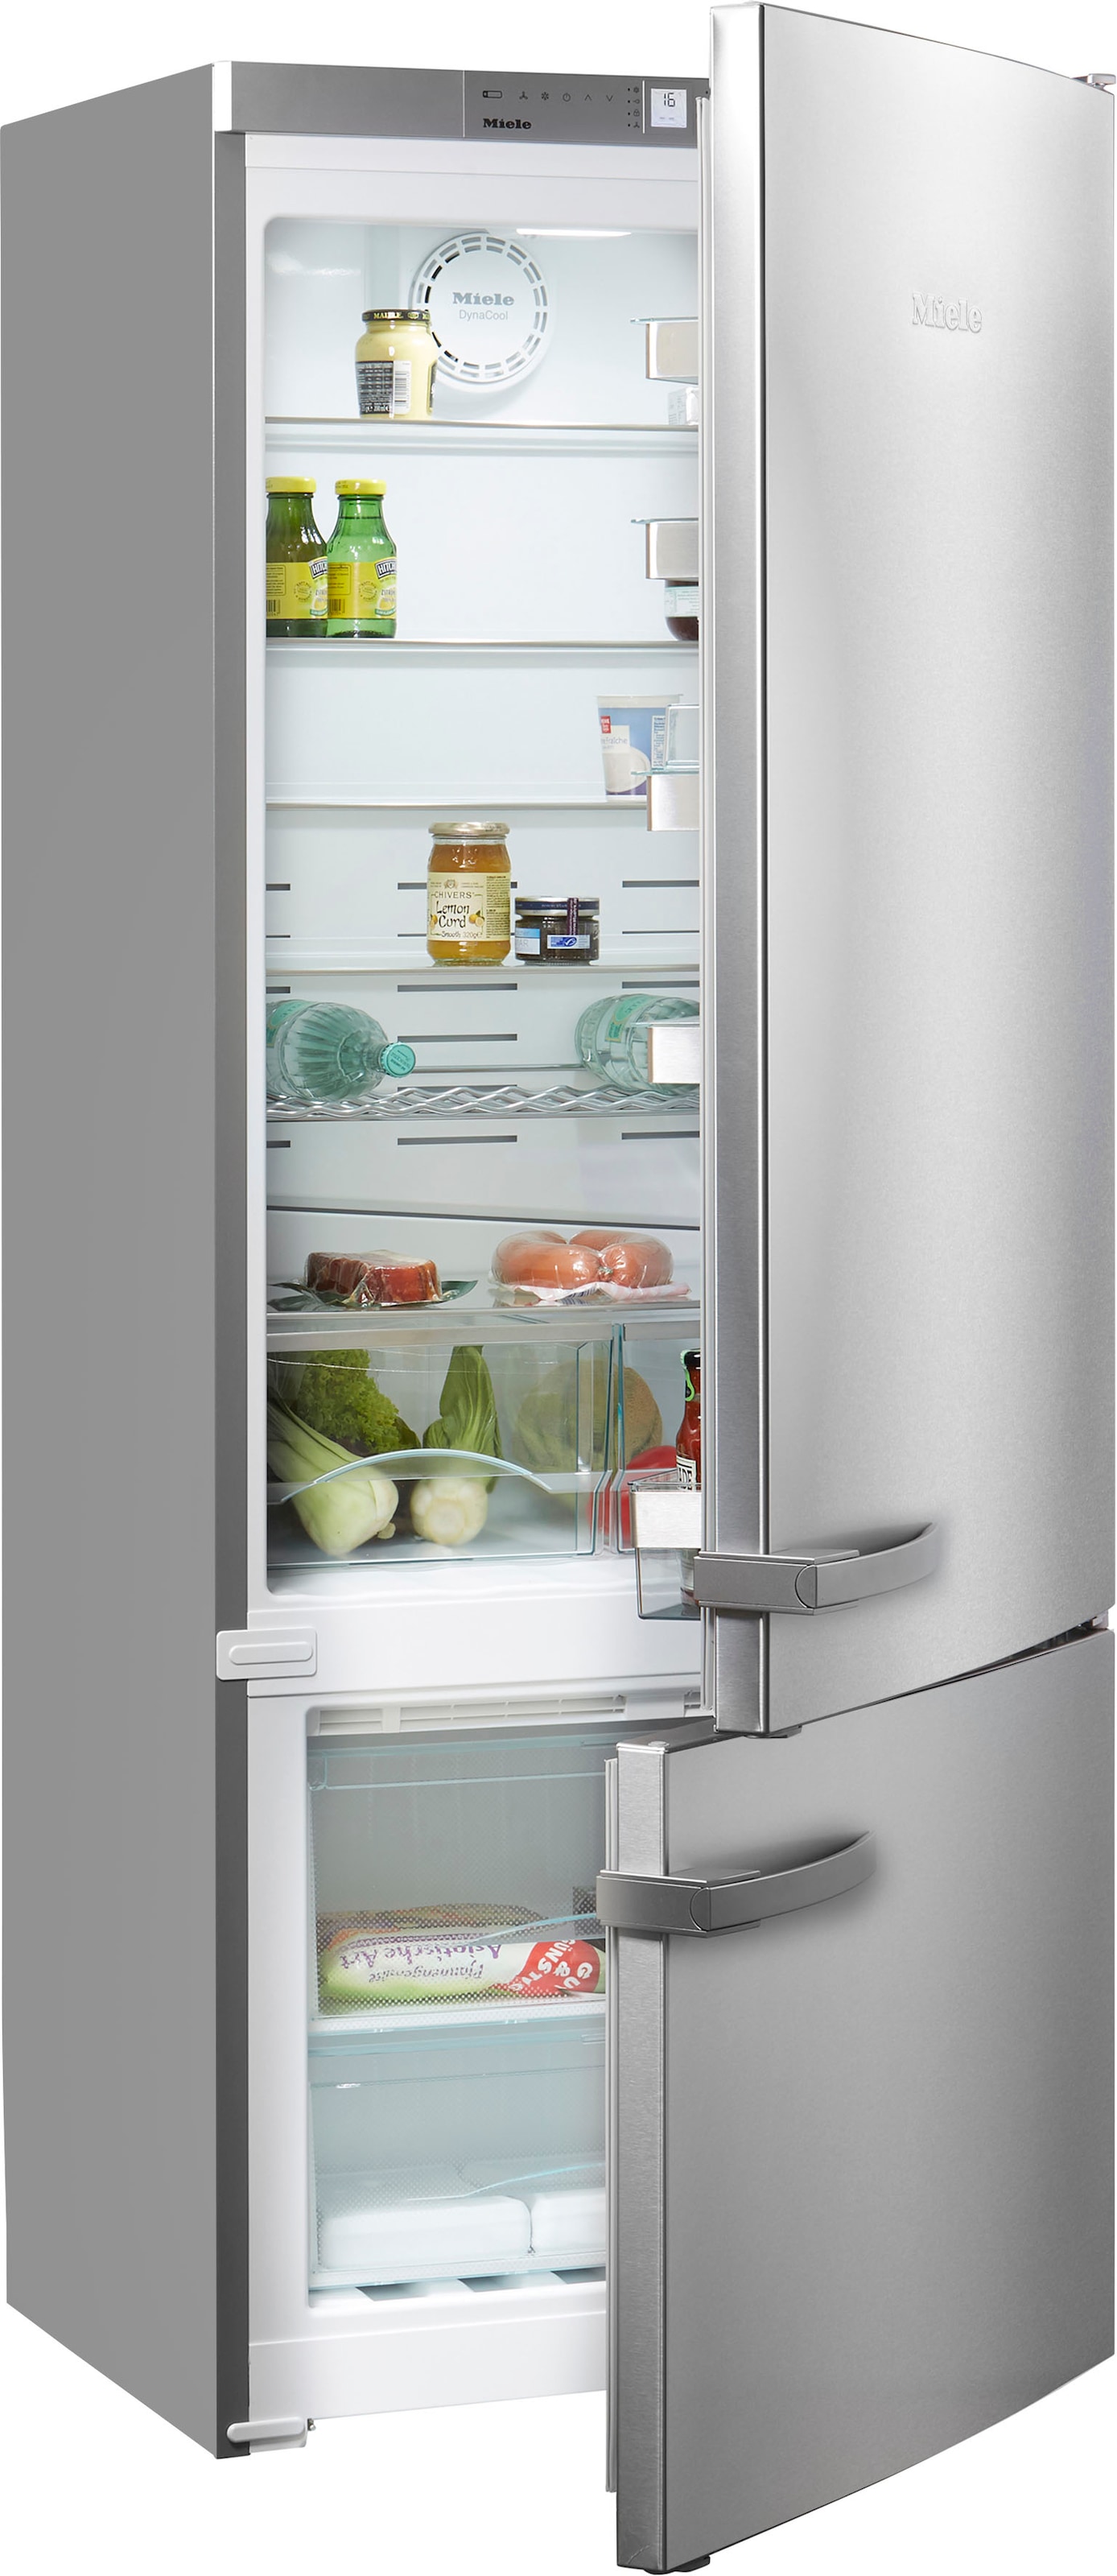 online Kühlschränke ▷ Ratenzahlung Miele kaufen BAUR |